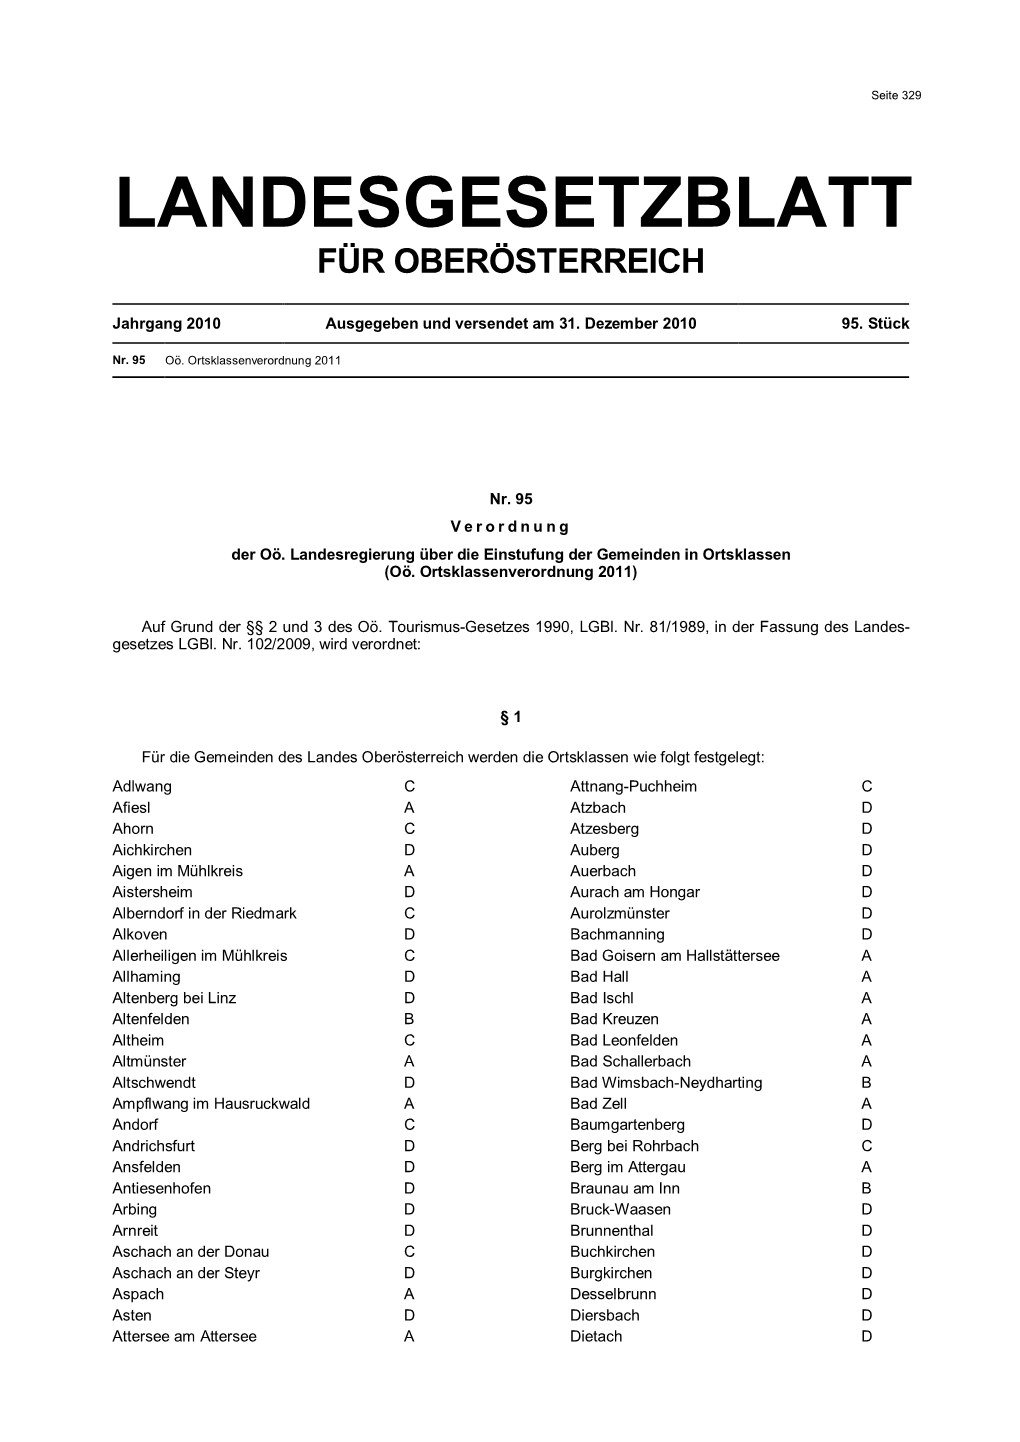 Landesgesetzblatt Für Oberösterreich